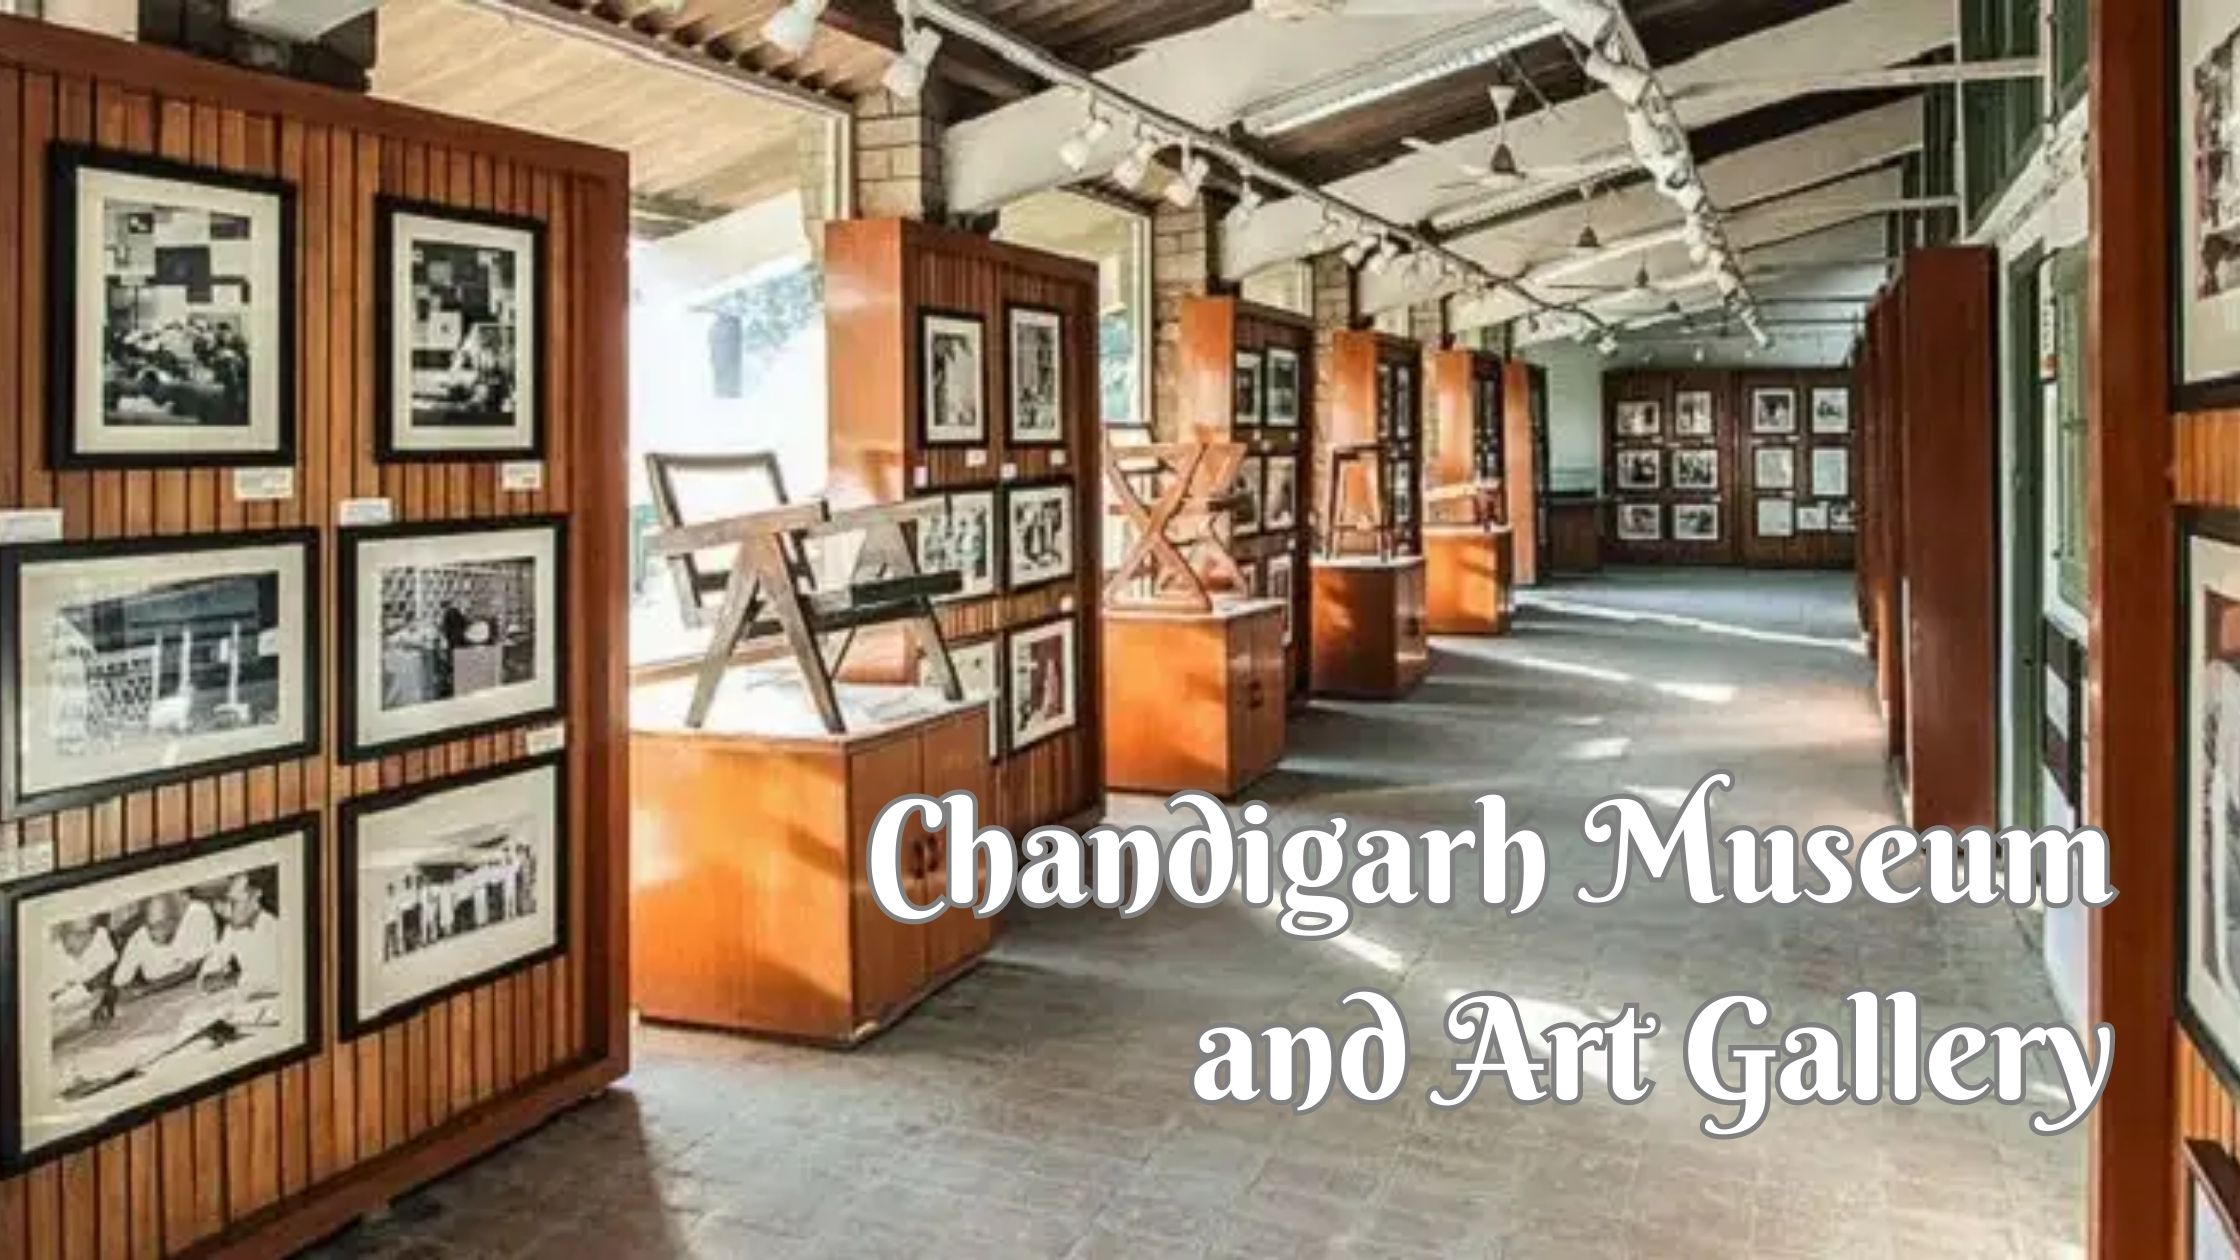 Chandigarh Museum and Art Gallery